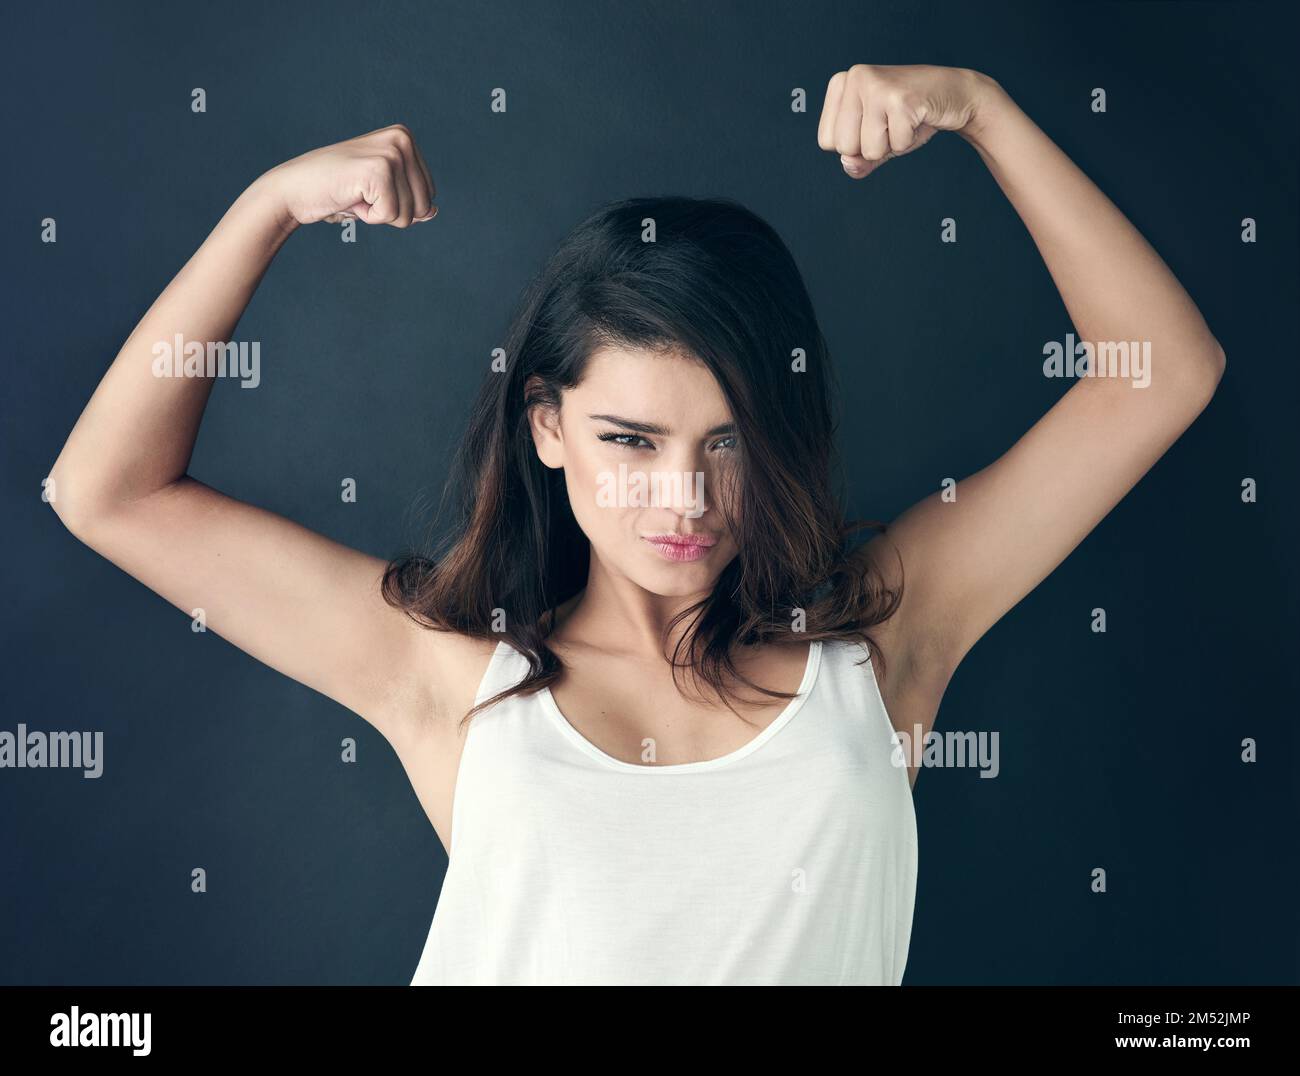 Nunca te disculpes por ser una mujer poderosa. Foto de estudio de una hermosa mujer joven que flexiona sus músculos contra un fondo oscuro. Foto de stock